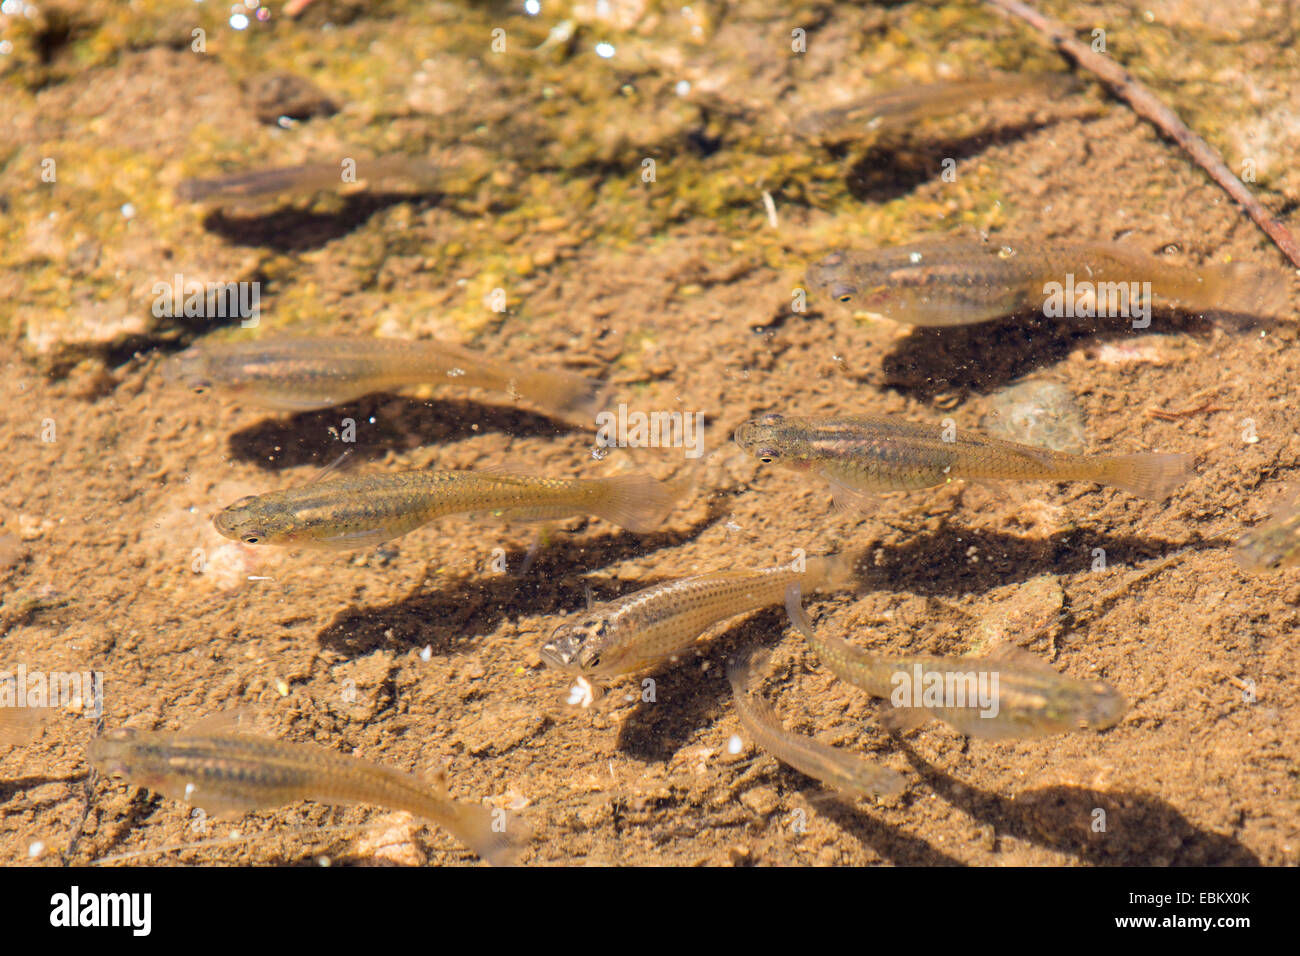 mosquito fish, mosquitofish (Gambusia affinis), several females in shallow water, USA, Arizona, Salt River, Phoenix Stock Photo